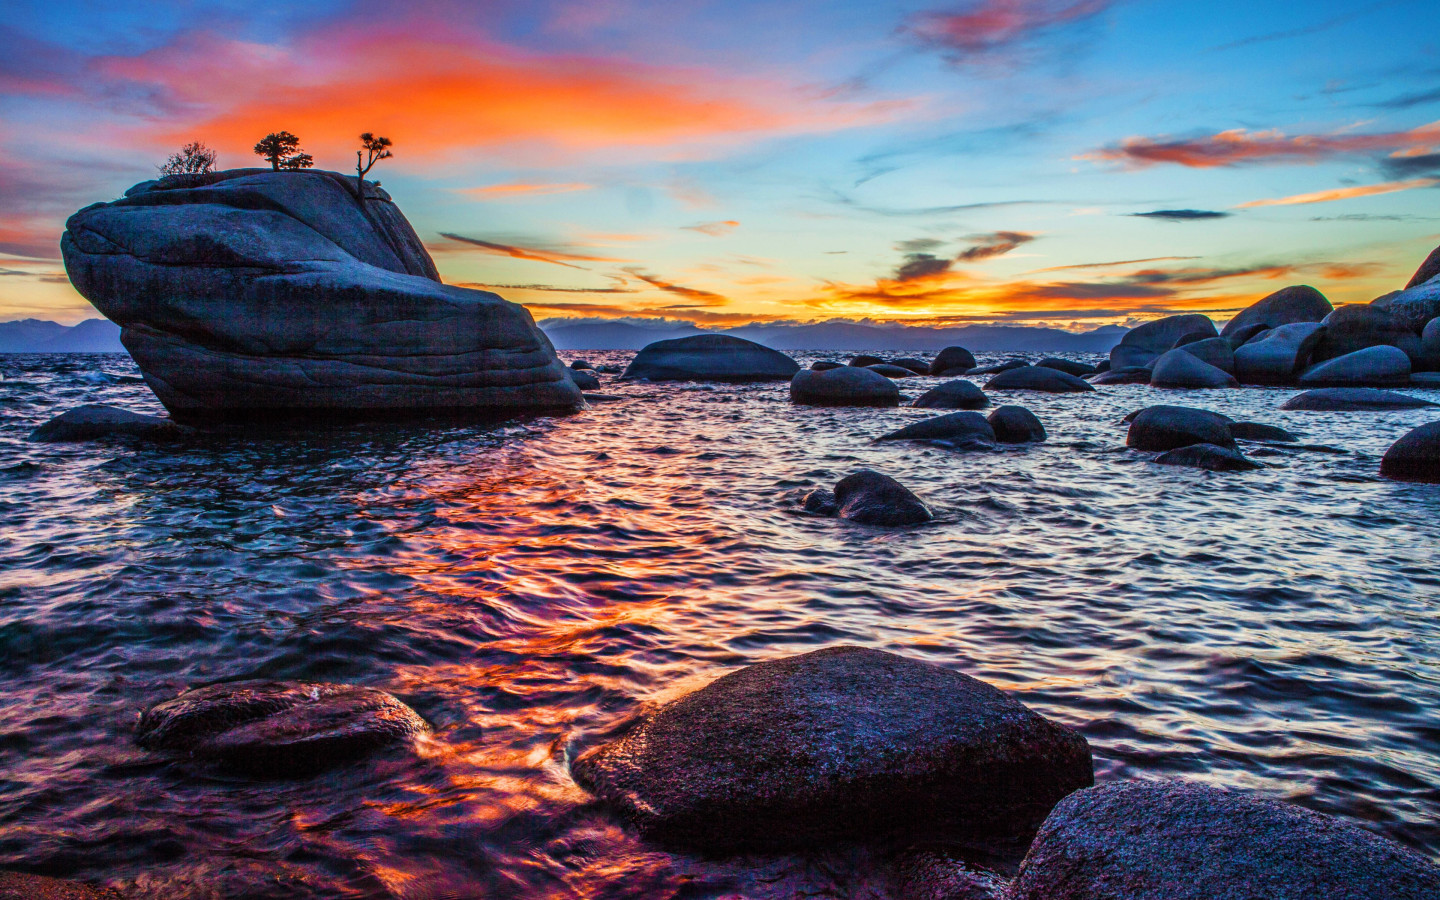 Bonsai Rock sunset at Lake Tahoe wallpaper 1440x900